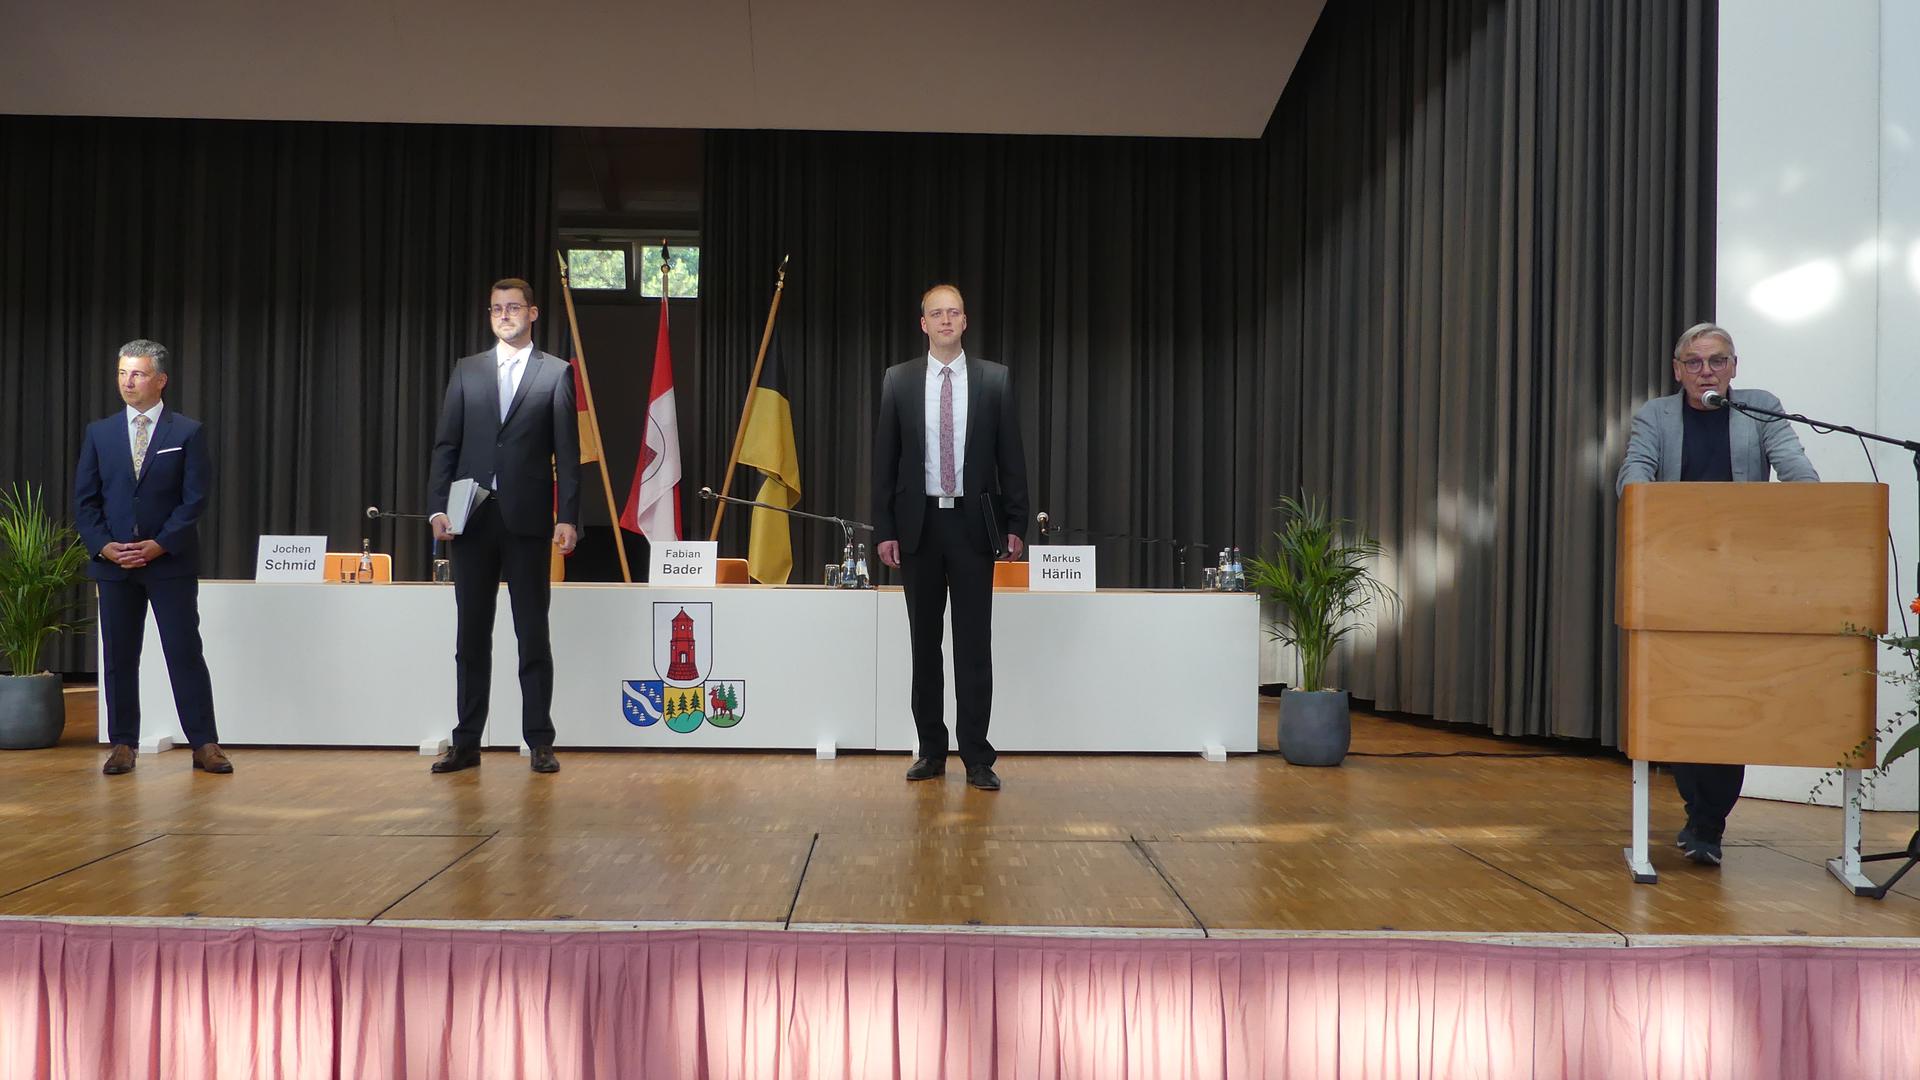 Bürgermeisterkandidaten stellen sich in der Neuenbürger Stadthalle vor. 
Von rechts: Sitzungsleiter Gerhard Brunner, die Bewerber Markus Härlin, Fabian Bader und Jochen Schmid.
